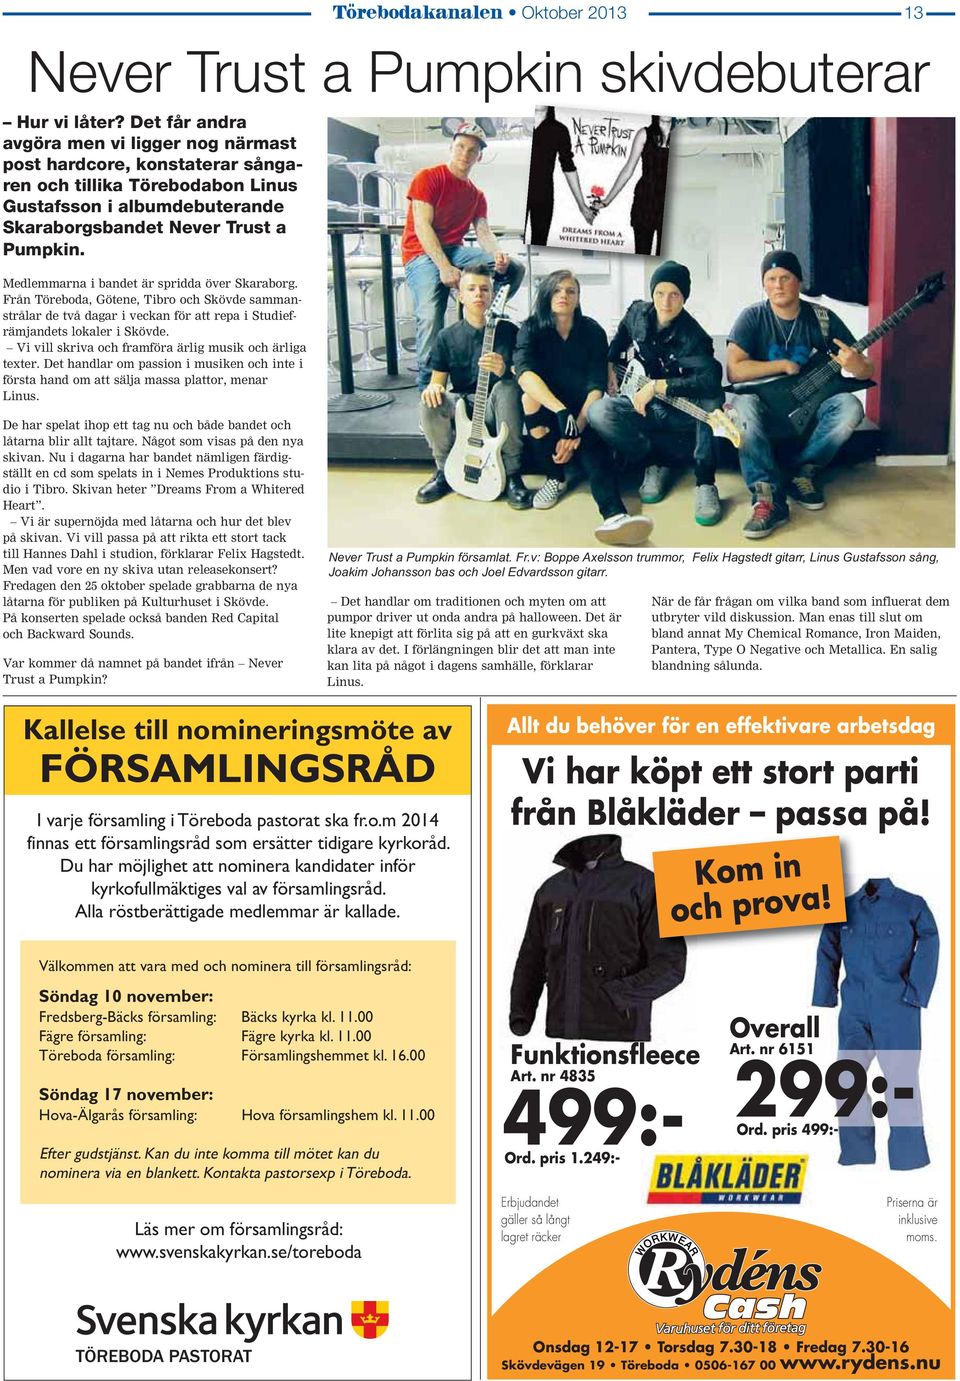 Medlemmarna i bandet är spridda över Skaraborg. Från Töreboda, Götene, Tibro och Skövde sammanstrålar de två dagar i veckan för att repa i Studiefrämjandets lokaler i Skövde.